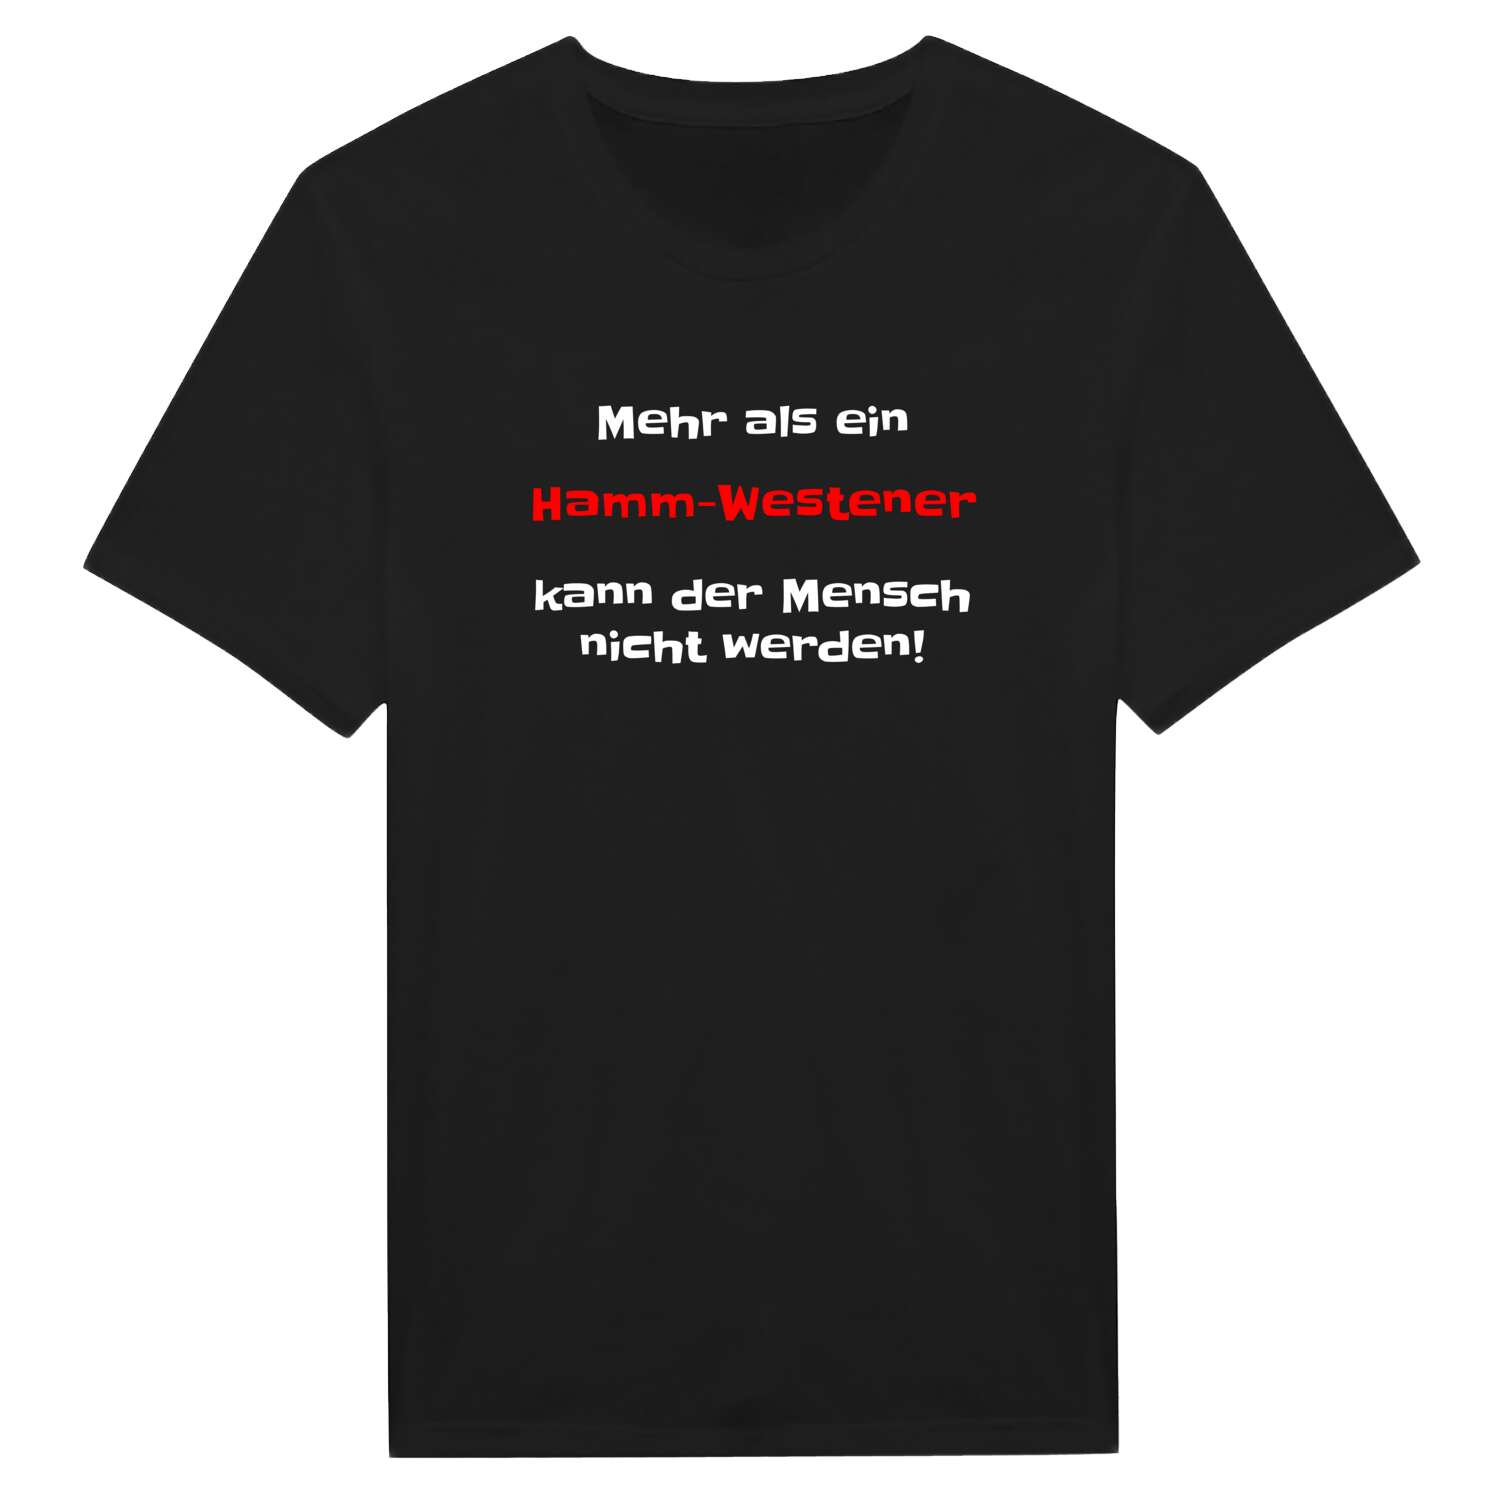 Hamm-Westen T-Shirt »Mehr als ein«